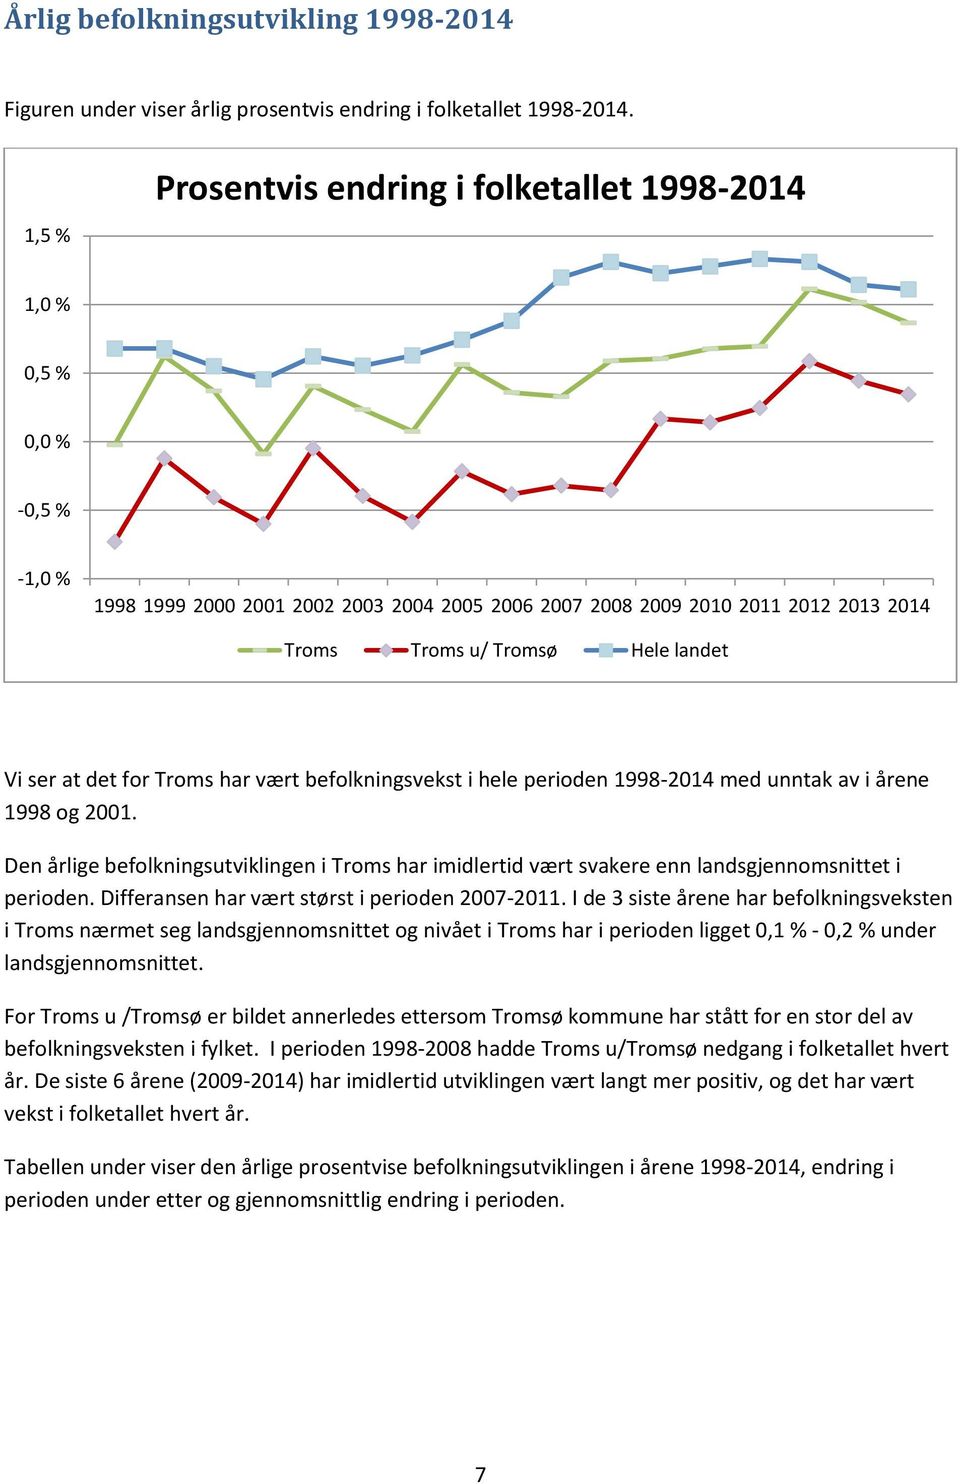 det for Troms har vært befolkningsvekst i hele perioden 1998- med unntak av i årene 1998 og 2001.